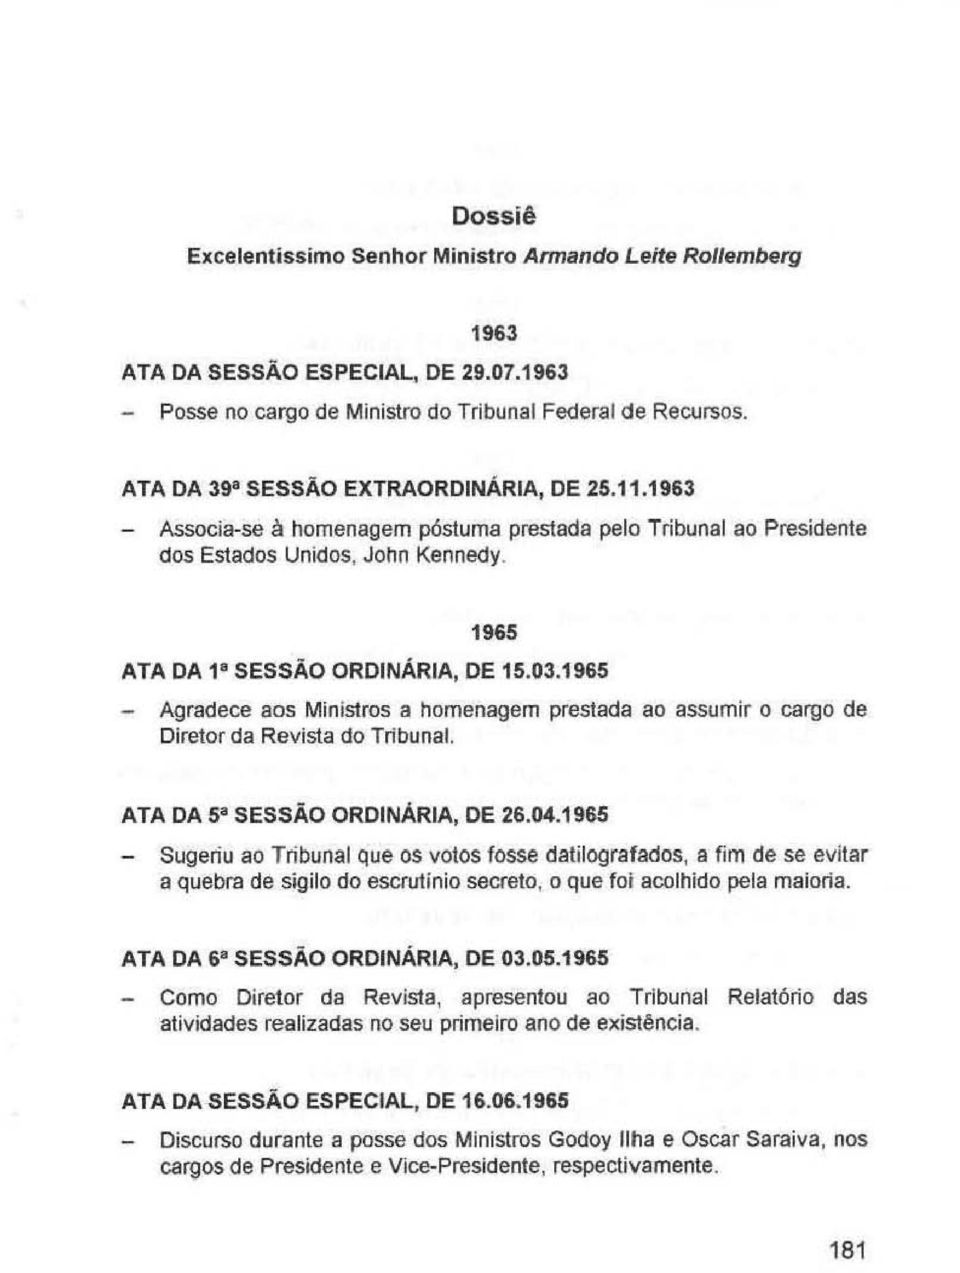 1965 - Agradece aos Ministros a homenagem prestada ao assumir o cargo de Diretor da Revista do Tribunal. ATA DA 5 a SESSÃO ORDINÁRIA, DE 26.04.